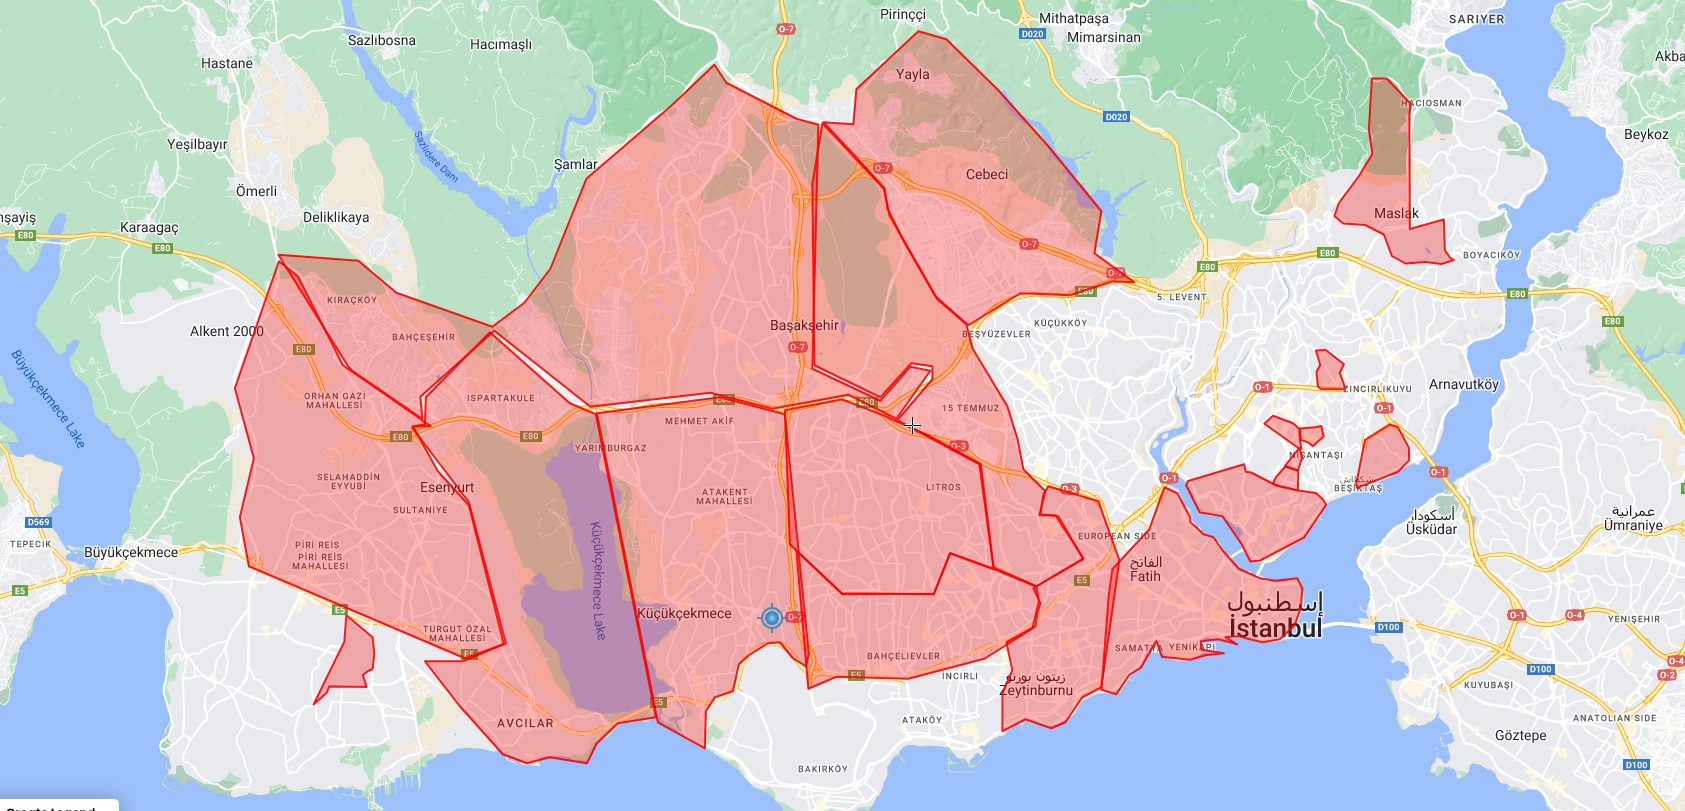 خريطة الأحياء المغلقة في الشطر الأوروبي من مدينة إسطنبول